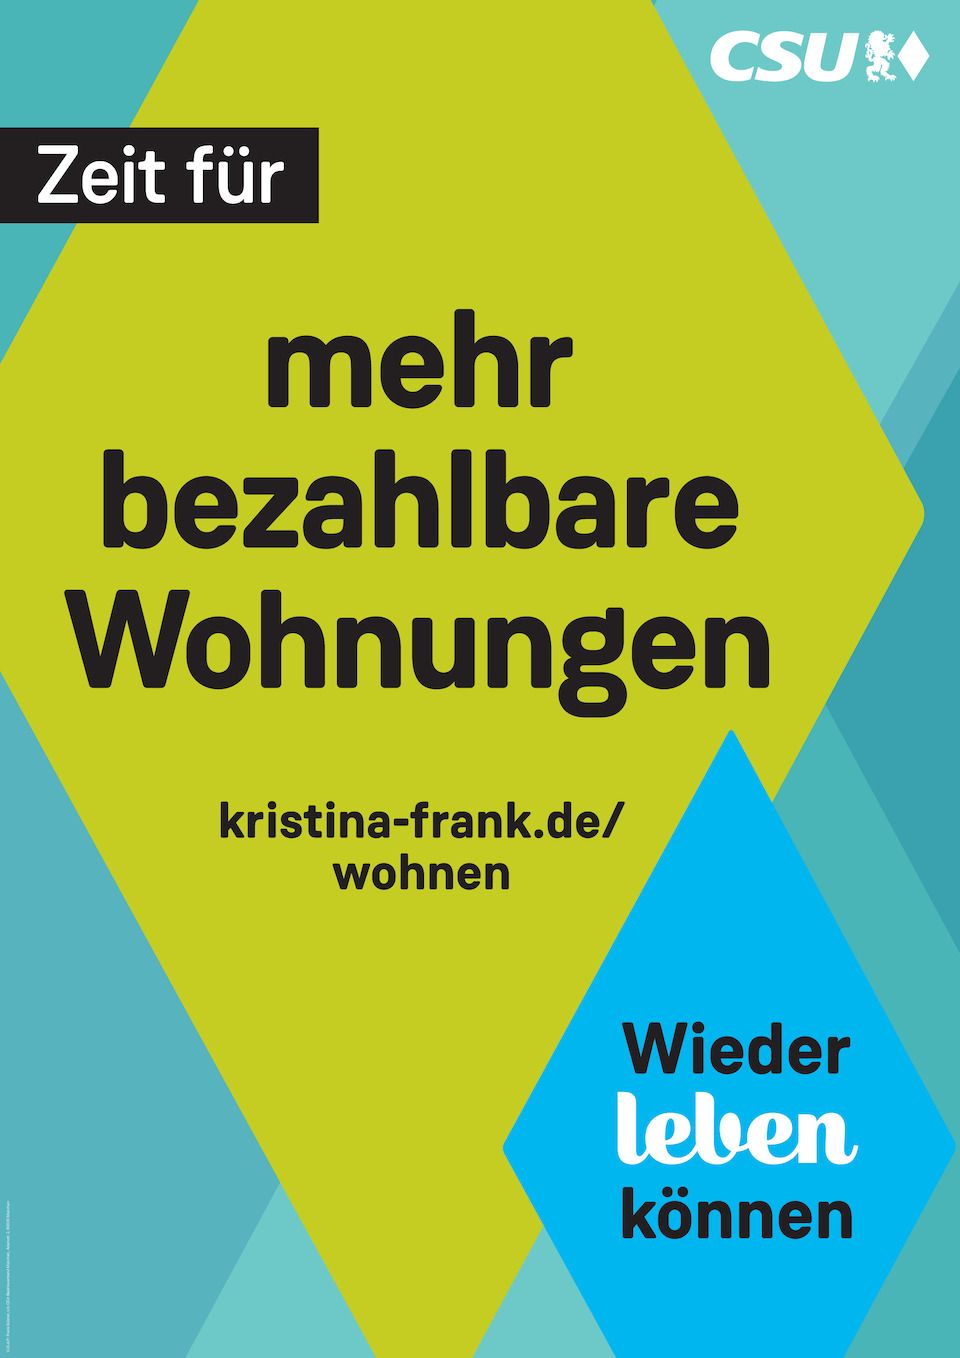 Wahlplakat Kristina Frank - Zeit für mehr bezahlbare Wohnungen